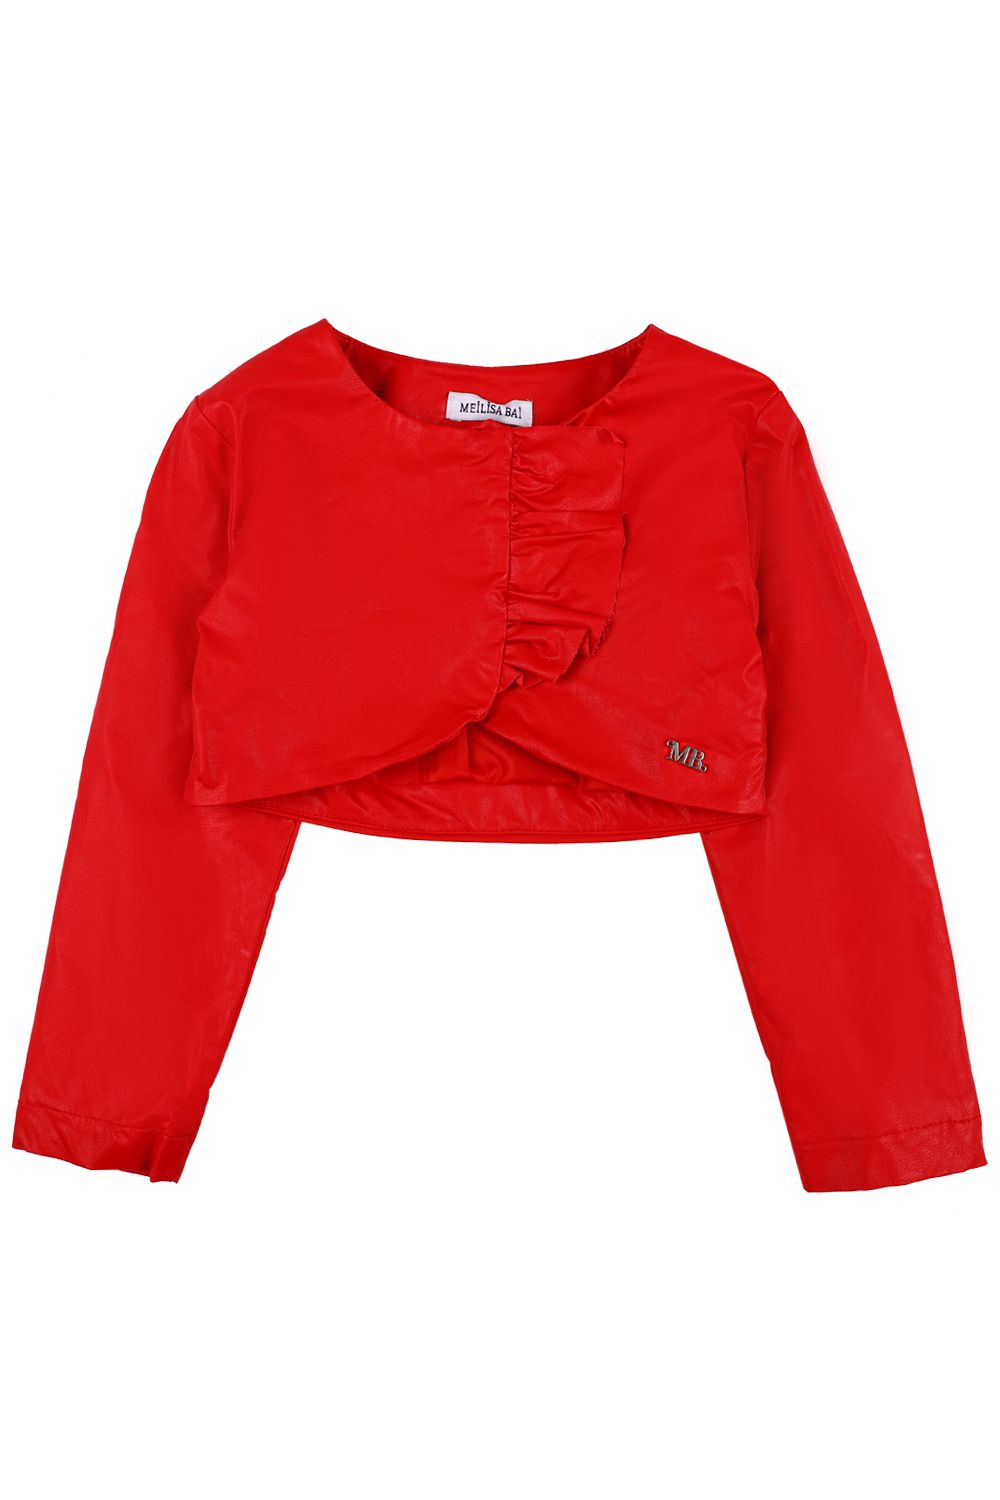 Болеро panolino комплект для девочки шорты кофта болеро колготки pn14912